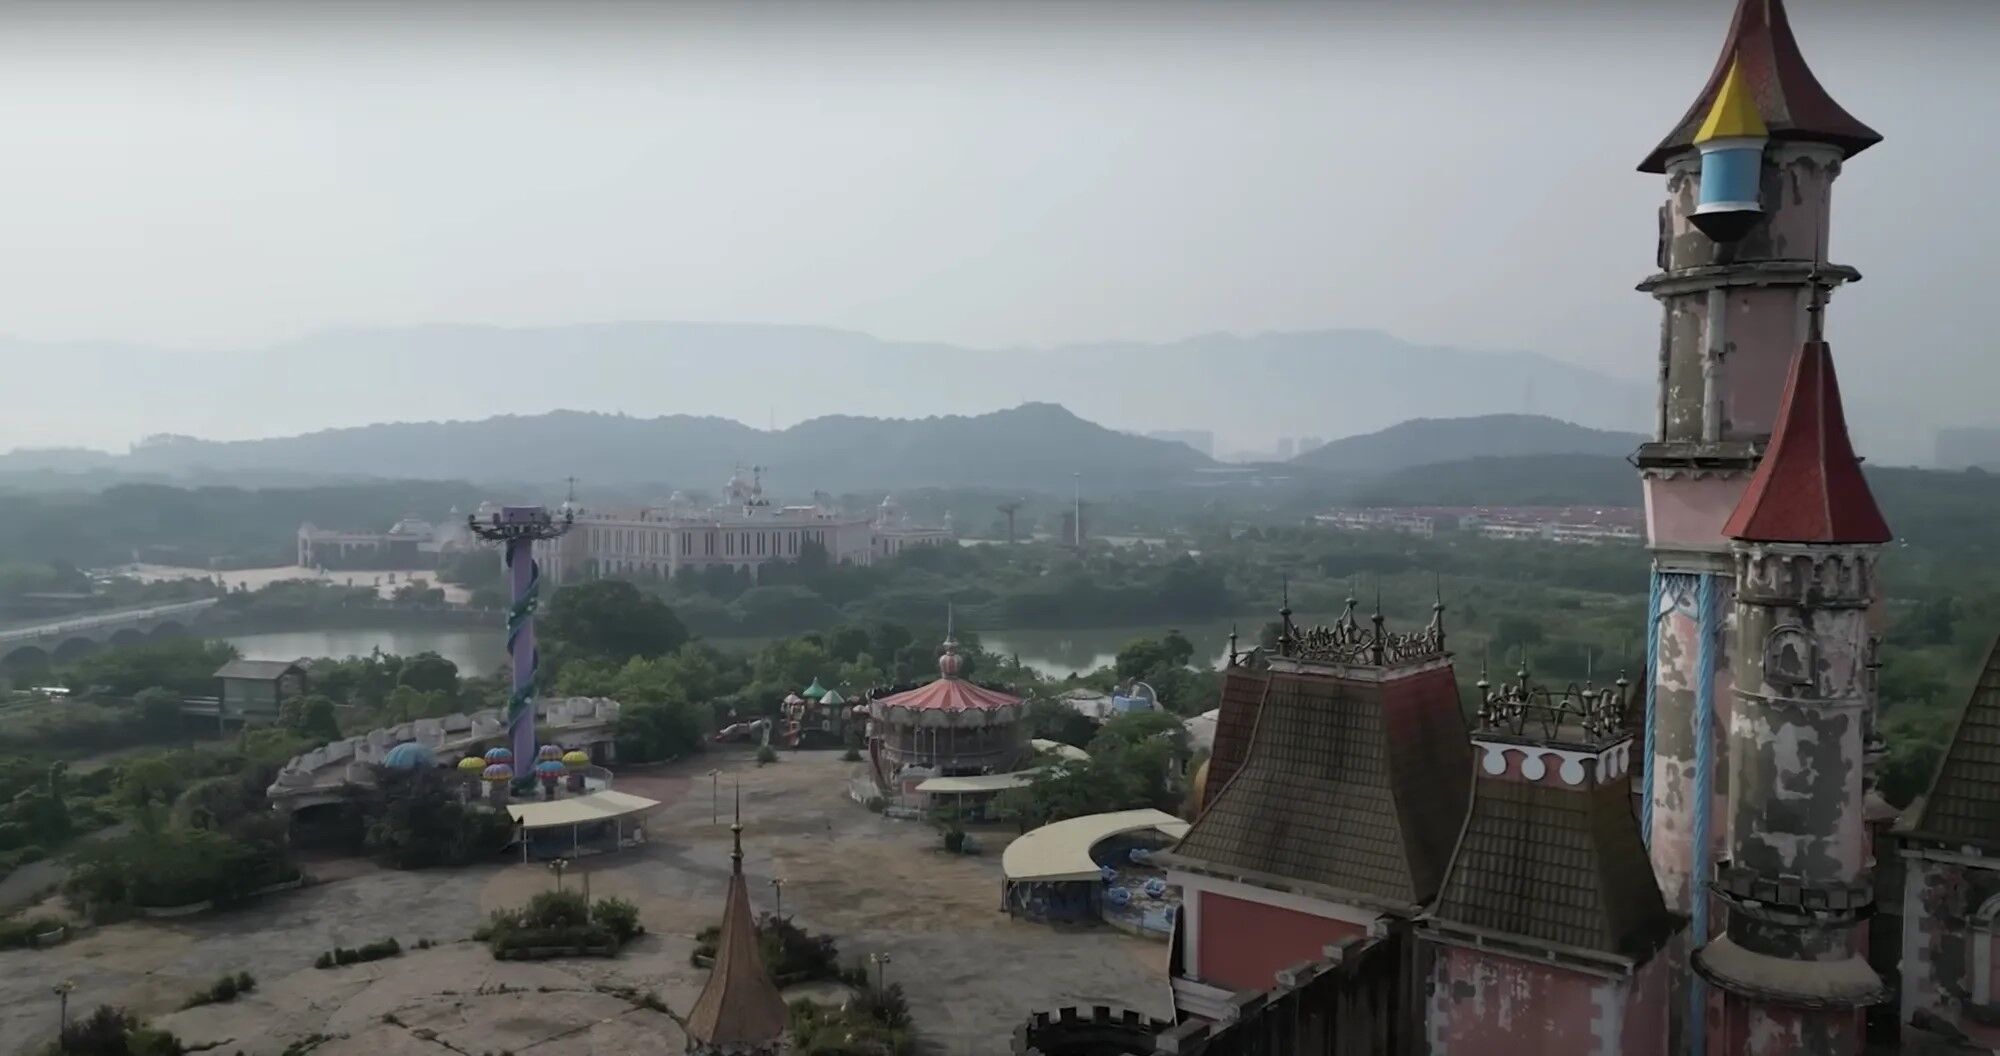 Как выглядит заброшенный парк развлечений в Китае, не смогший конкурировать с Диснейлендом. Видео